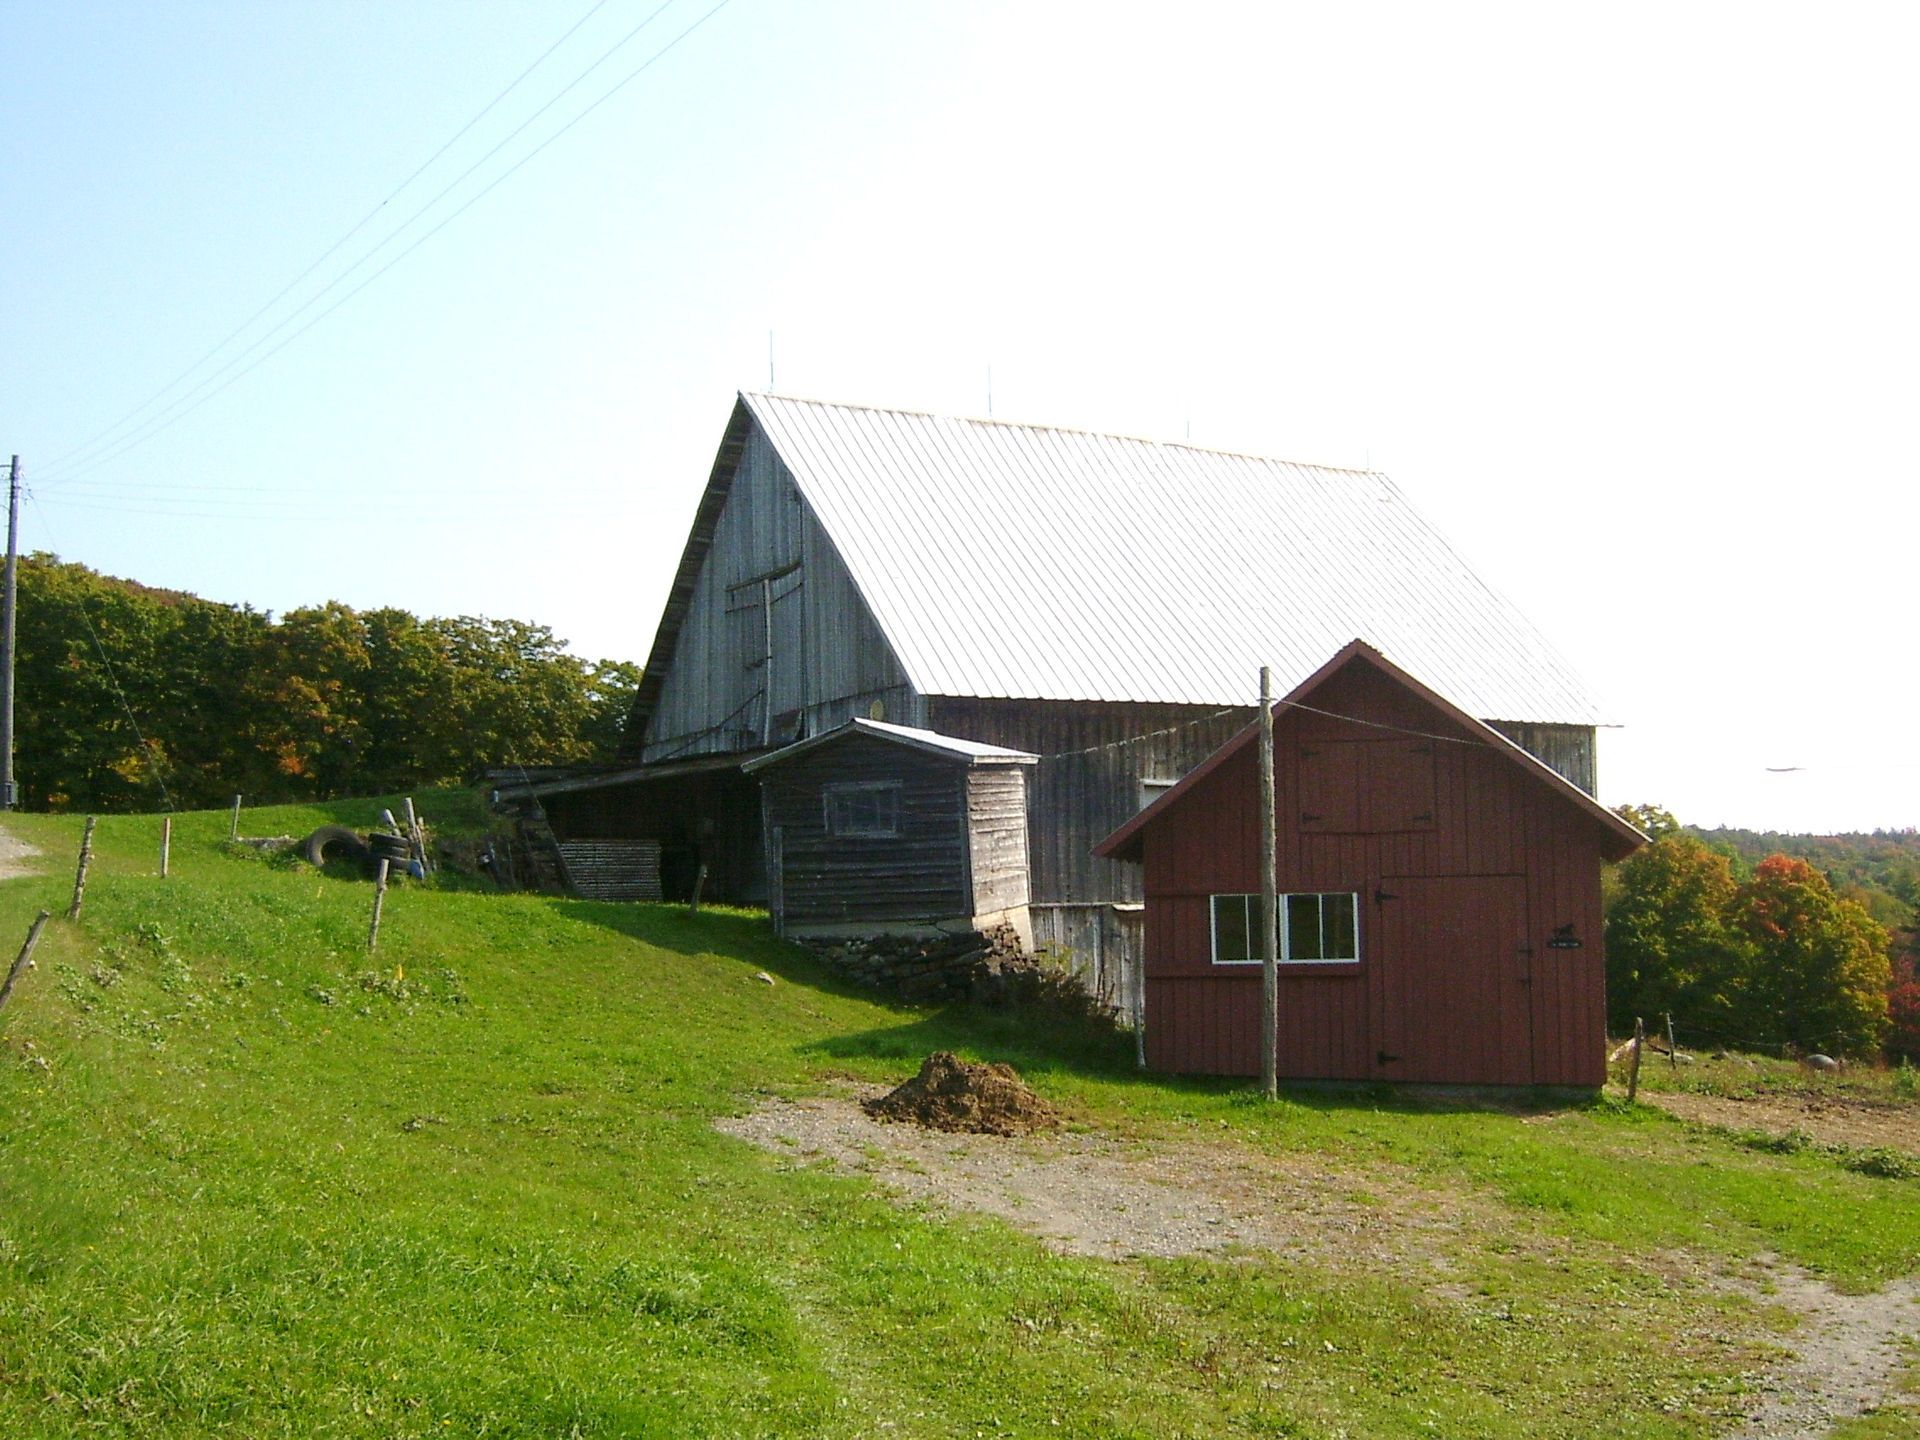 View of Raymond Berry Barn.